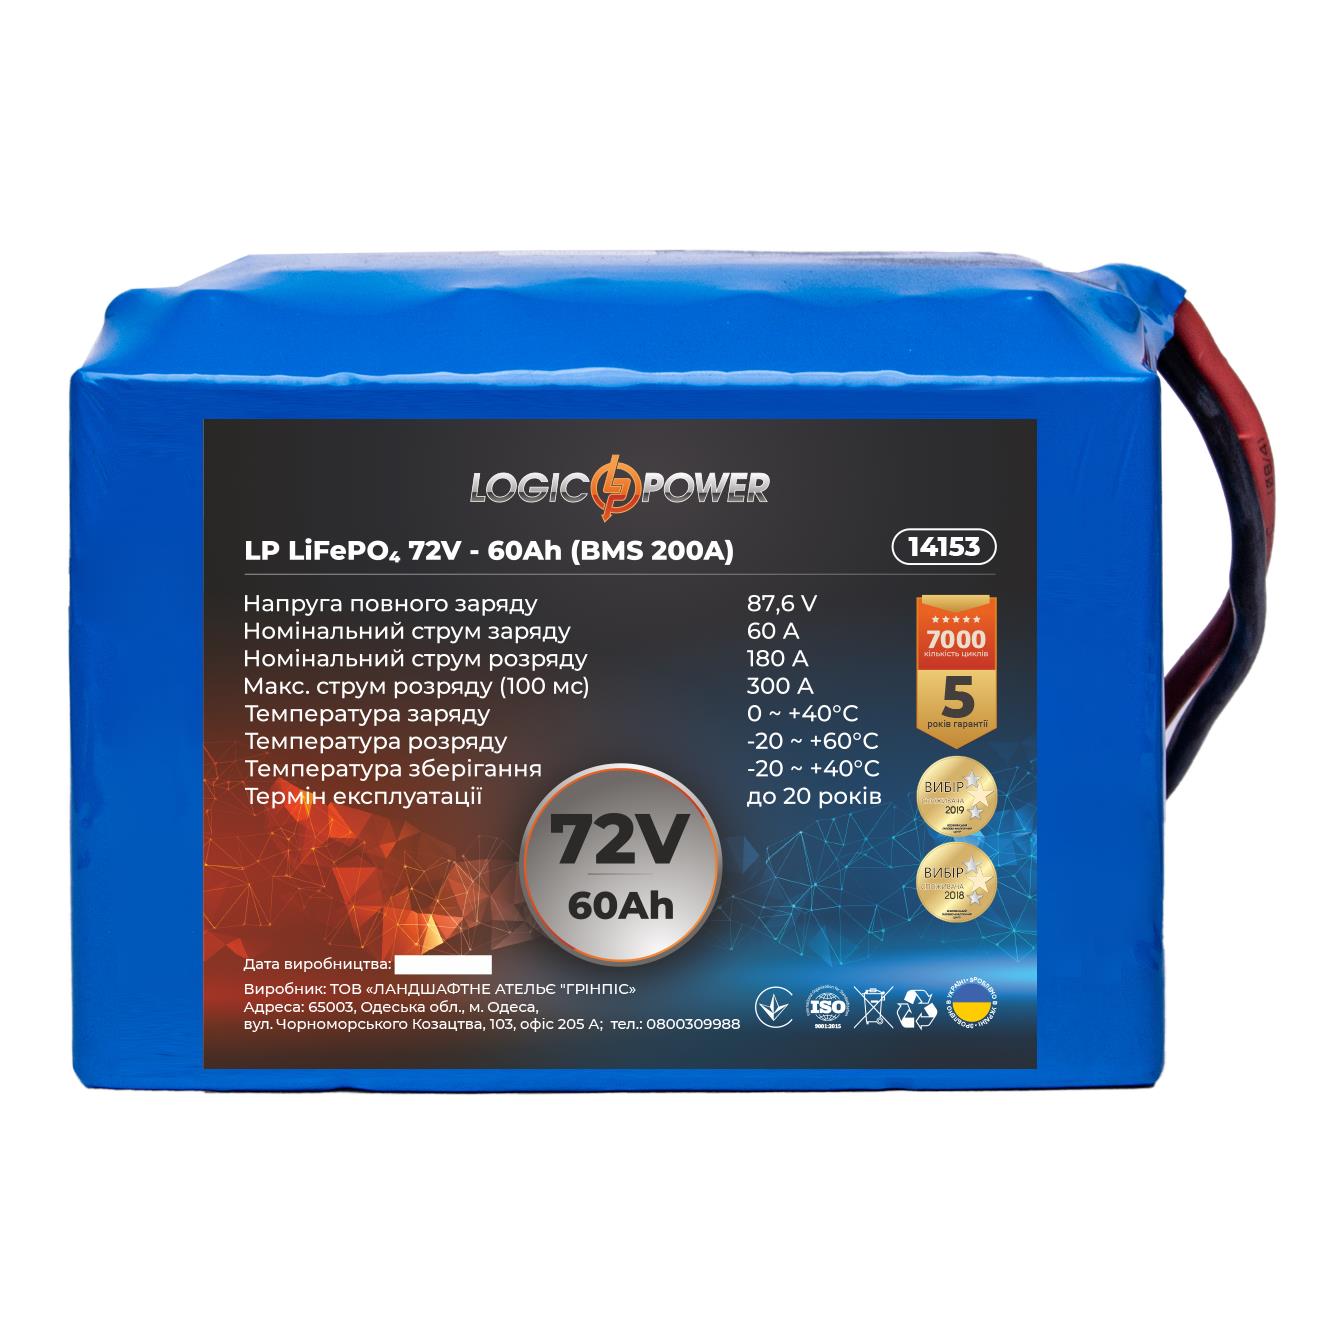 Інструкція акумулятор 72 в LogicPower LP LiFePO4 72V - 60 Ah (BMS 200A) (14153)